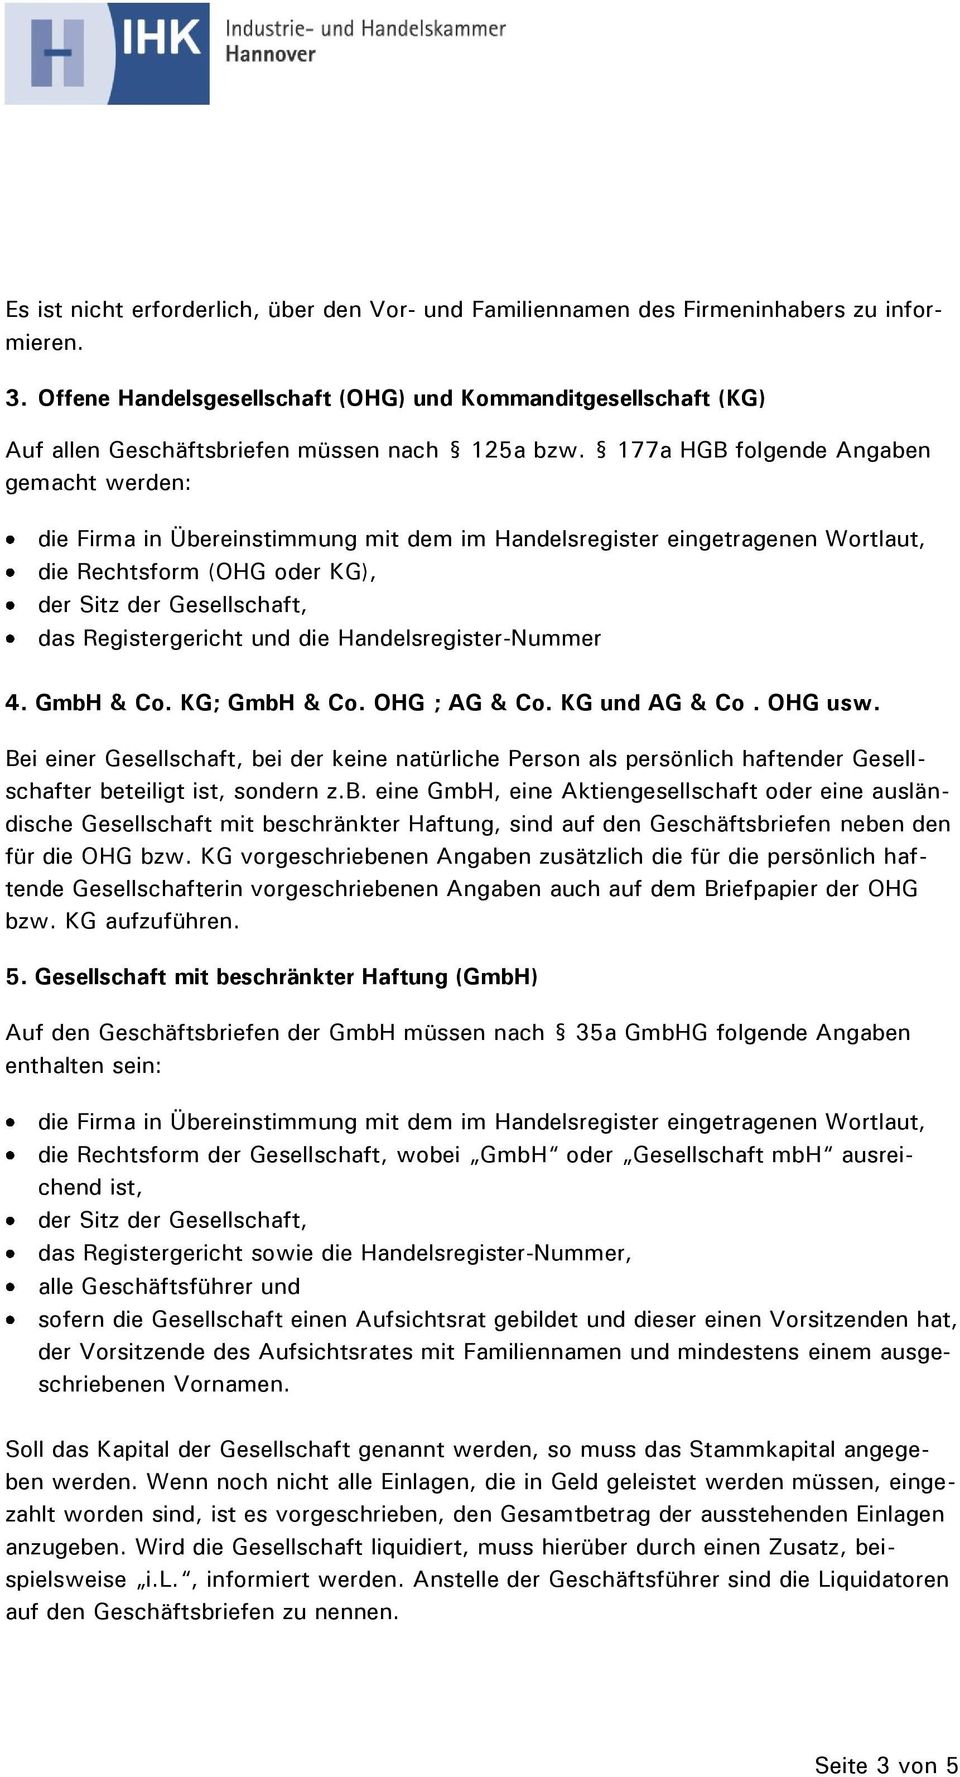 177a HGB folgende Angaben gemacht werden: die Rechtsform (OHG oder KG), das Registergericht und die Handelsregister-Nummer 4. GmbH & Co. KG; GmbH & Co. OHG ; AG & Co. KG und AG & Co. OHG usw.